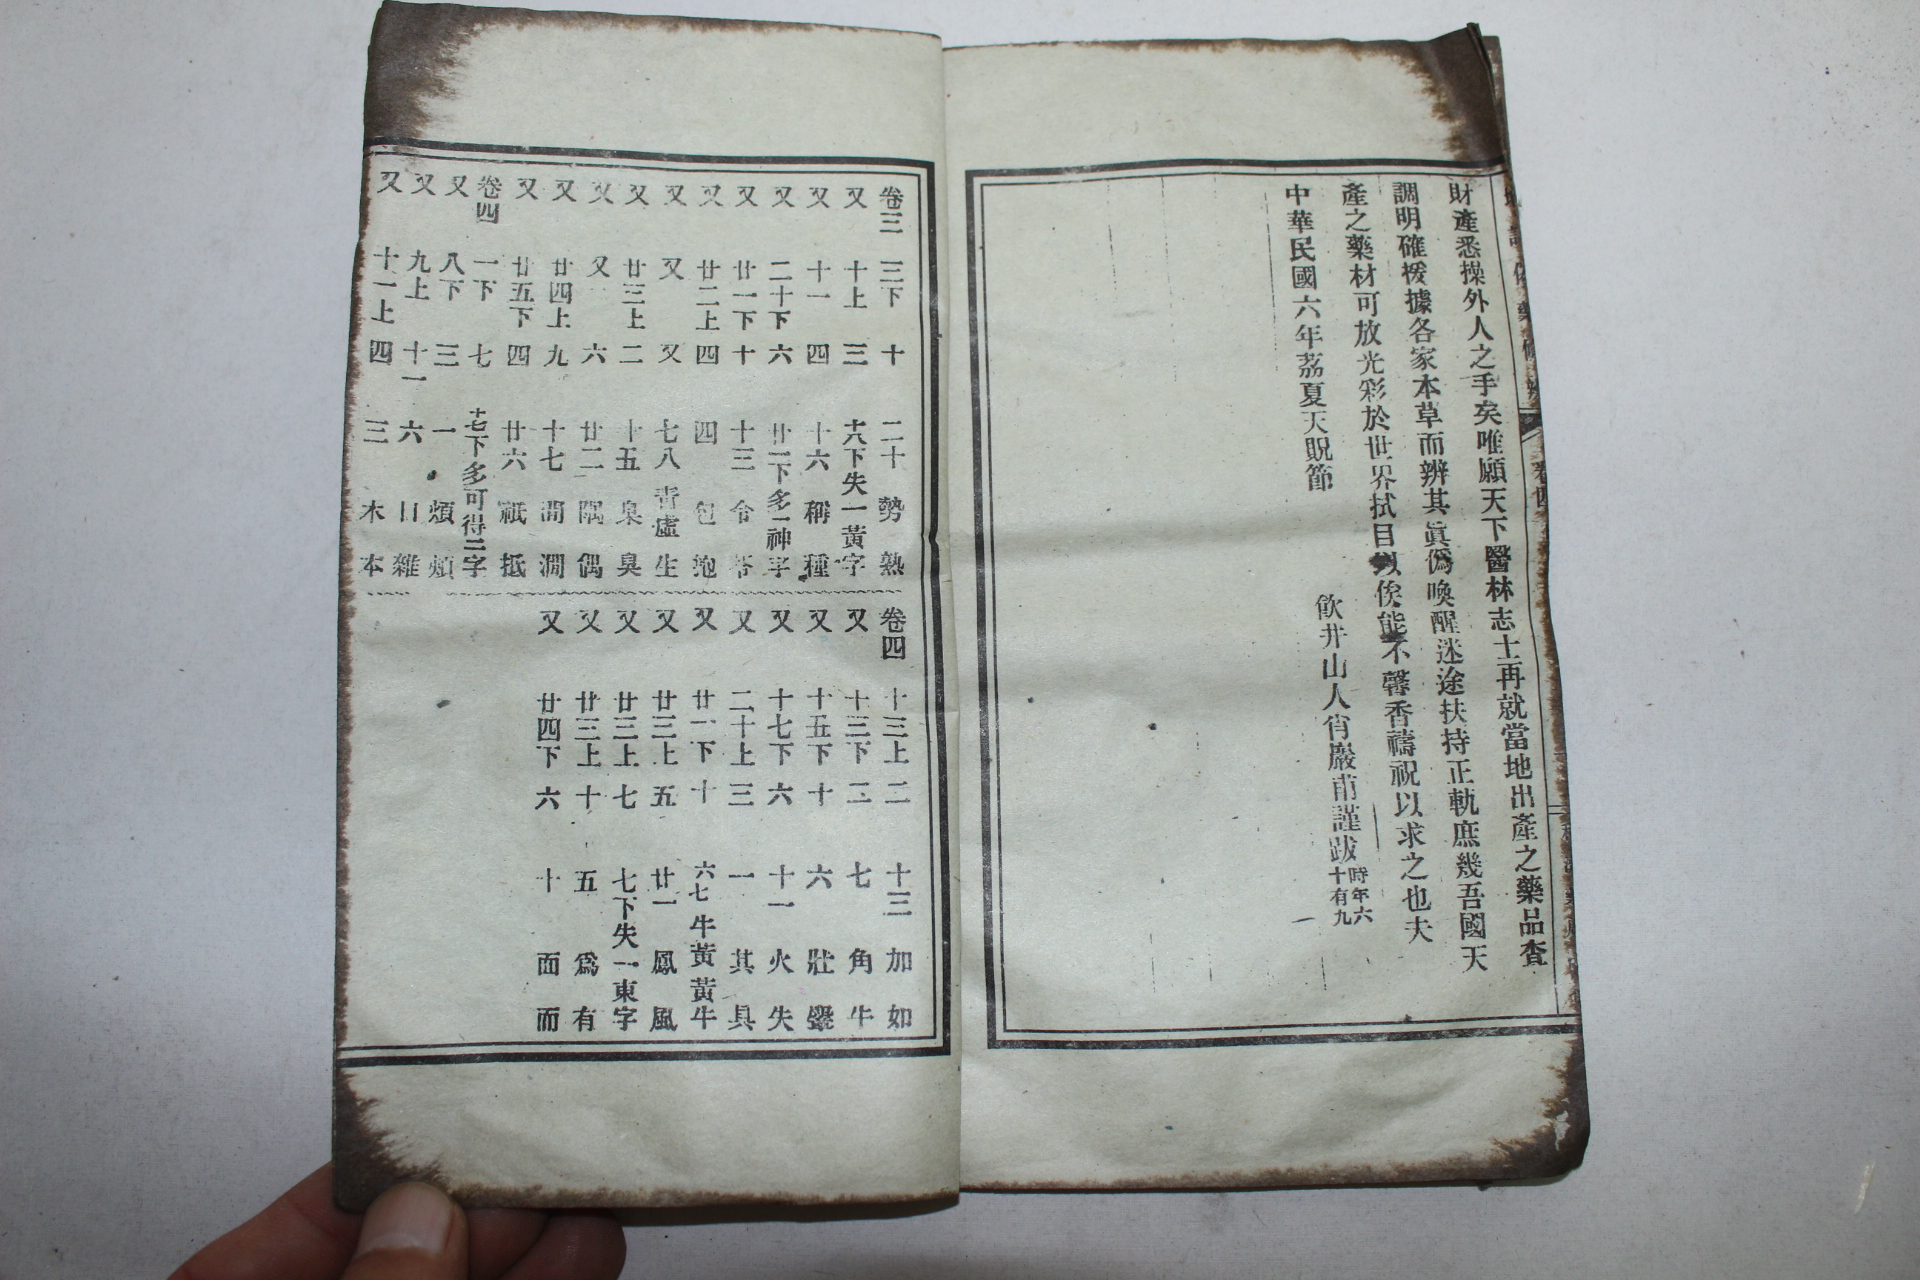 중국석판본 의서 증정위약수변(增訂僞藥修辨) 9책완질